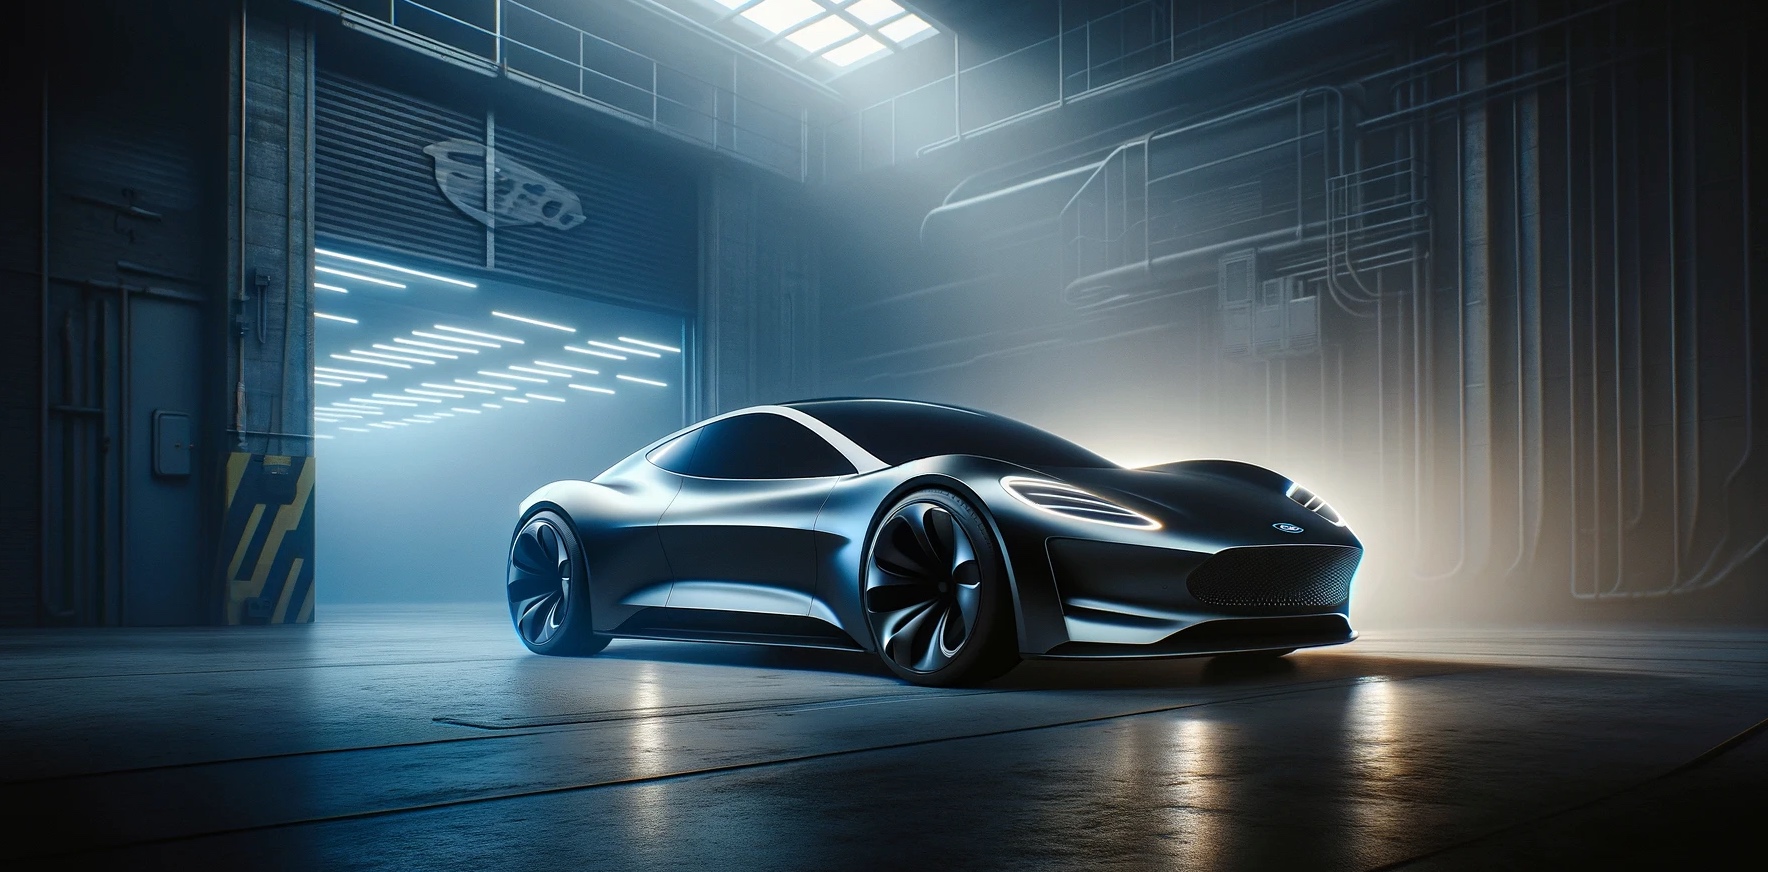 Le projet Ford Skunkworks vise à développer un véhicule électrique à faible coût. © Xavier pour Futura avec DALL-E